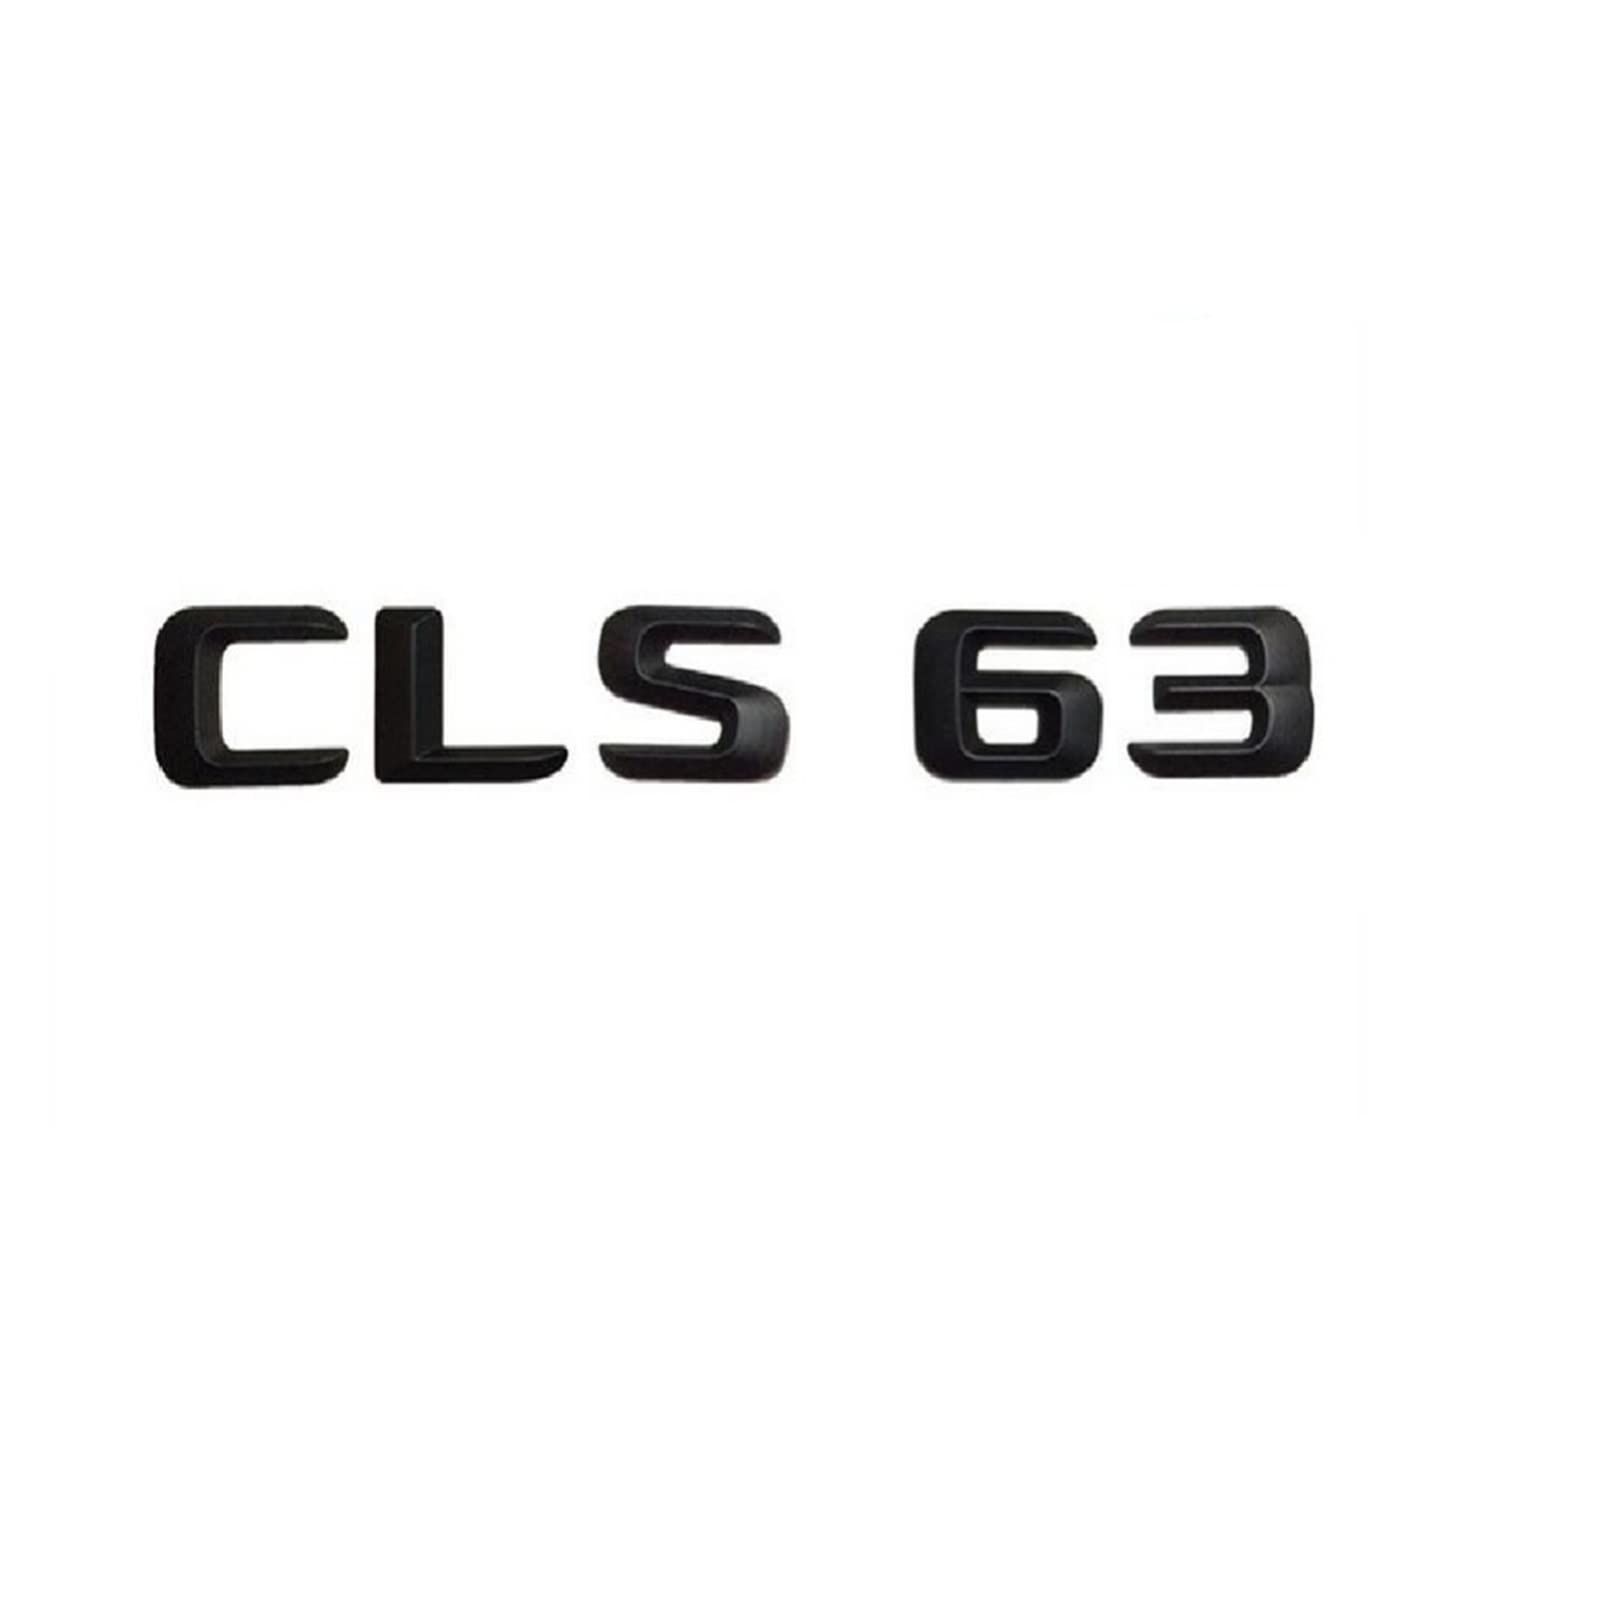 NEZIH Mattschwarz CLS 63" Auto-Kofferraum-hintere Buchstaben-Wort-Abzeichen-Emblem-Buchstaben-Aufkleber-Aufkleber, kompatibel mit Mercedes Benz AMG CLS-Klasse CLS63 Emblem-Logo-Aufkleber von NEZIH